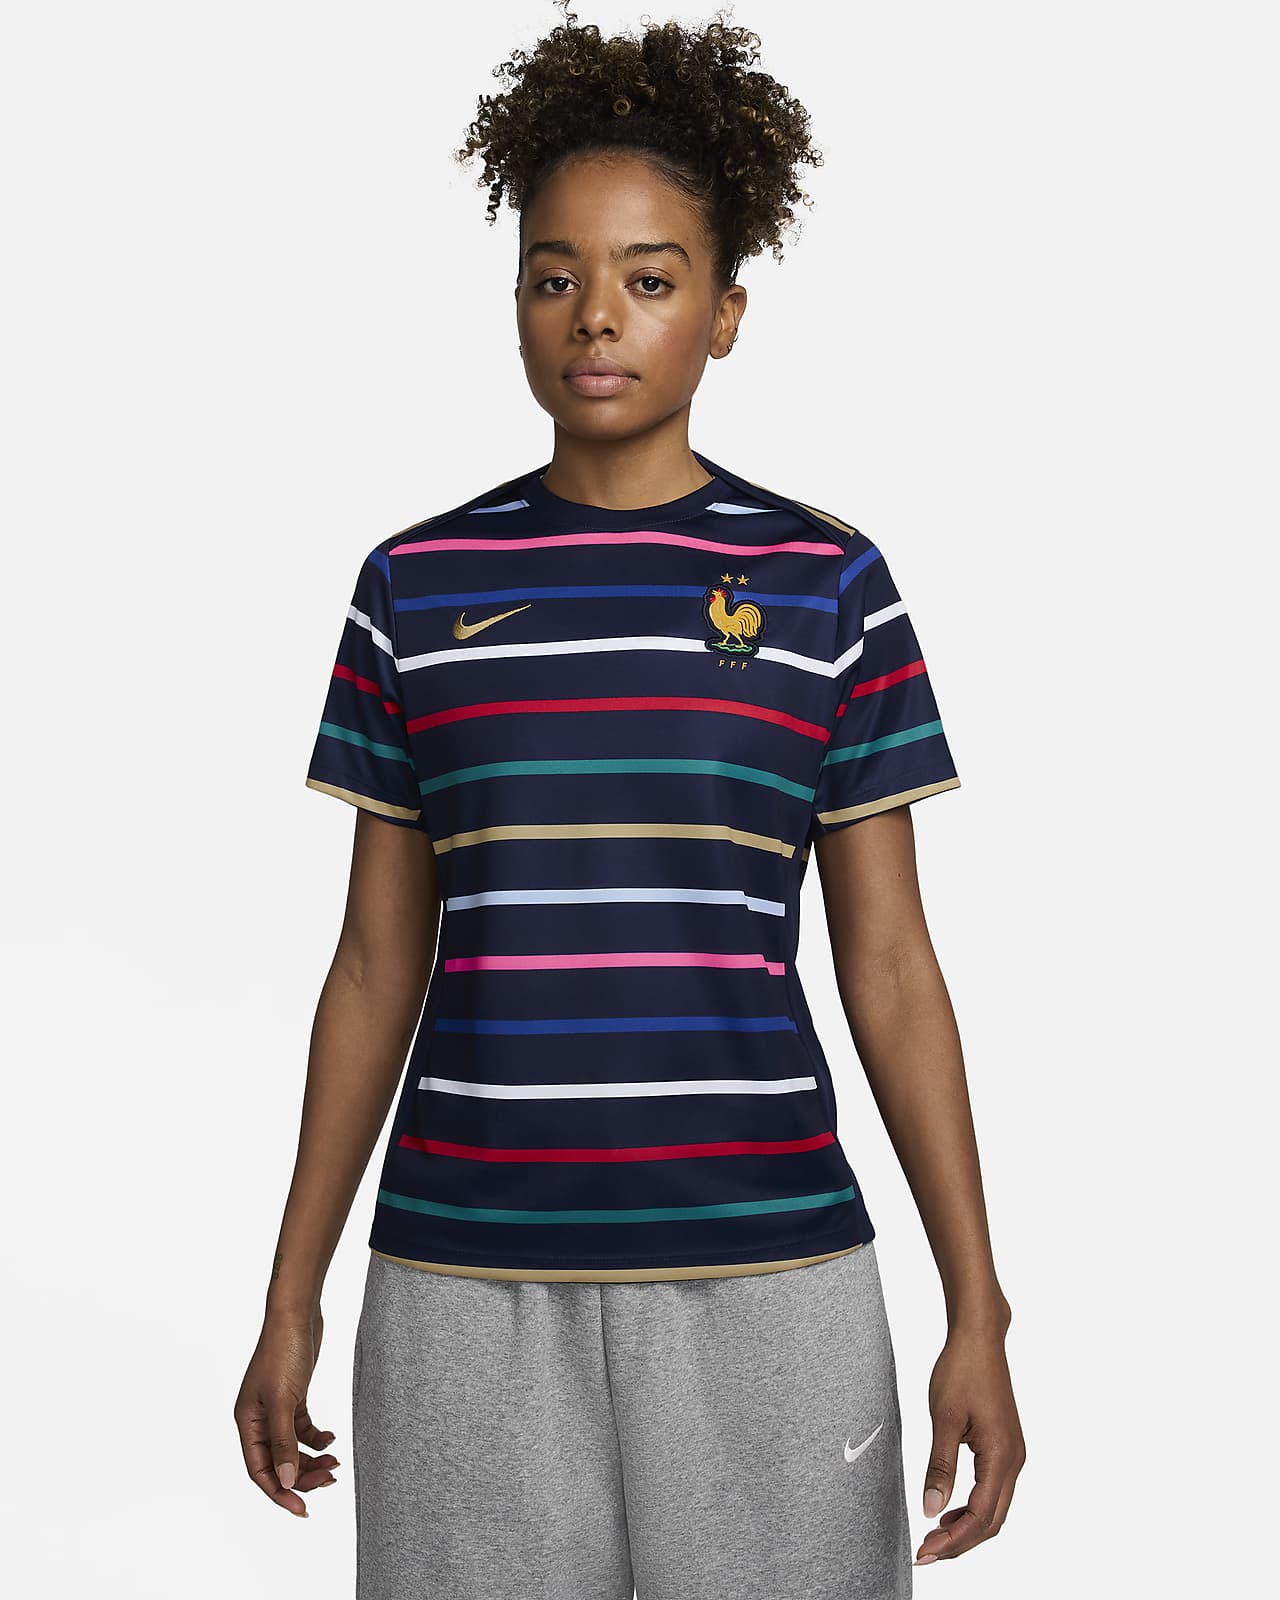 Dámské předzápasové fotbalové tričko Nike Dri-FIT FFF Academy Pro, domácí